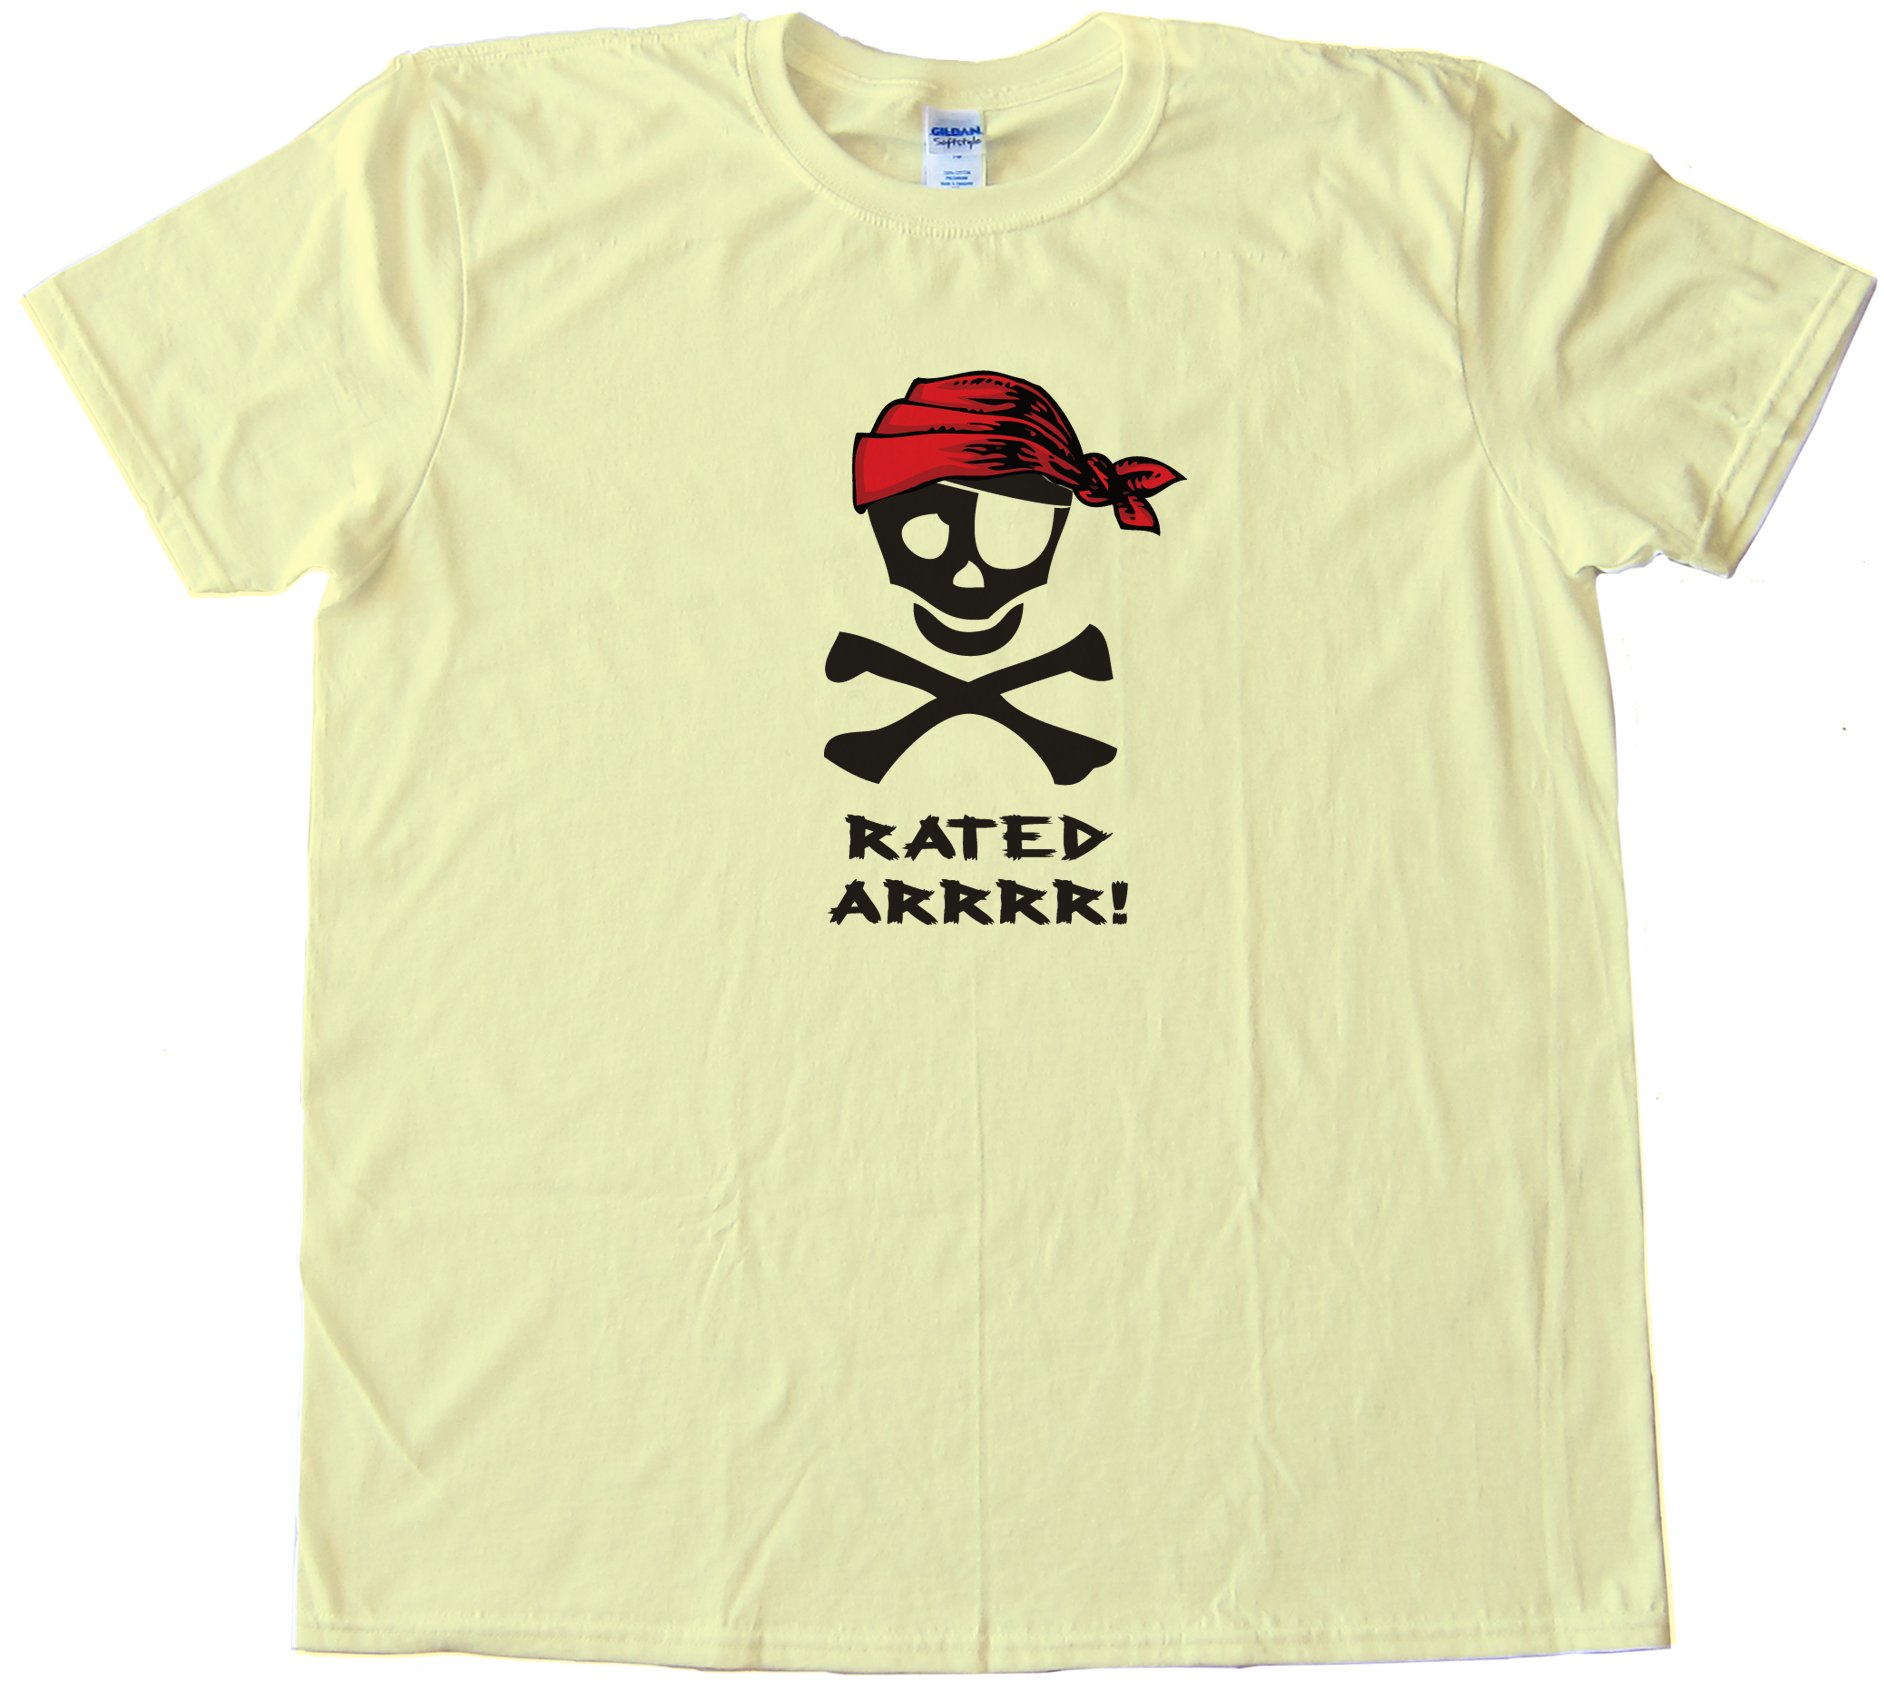 Rated Arrrr! Pirate Tee Shirt